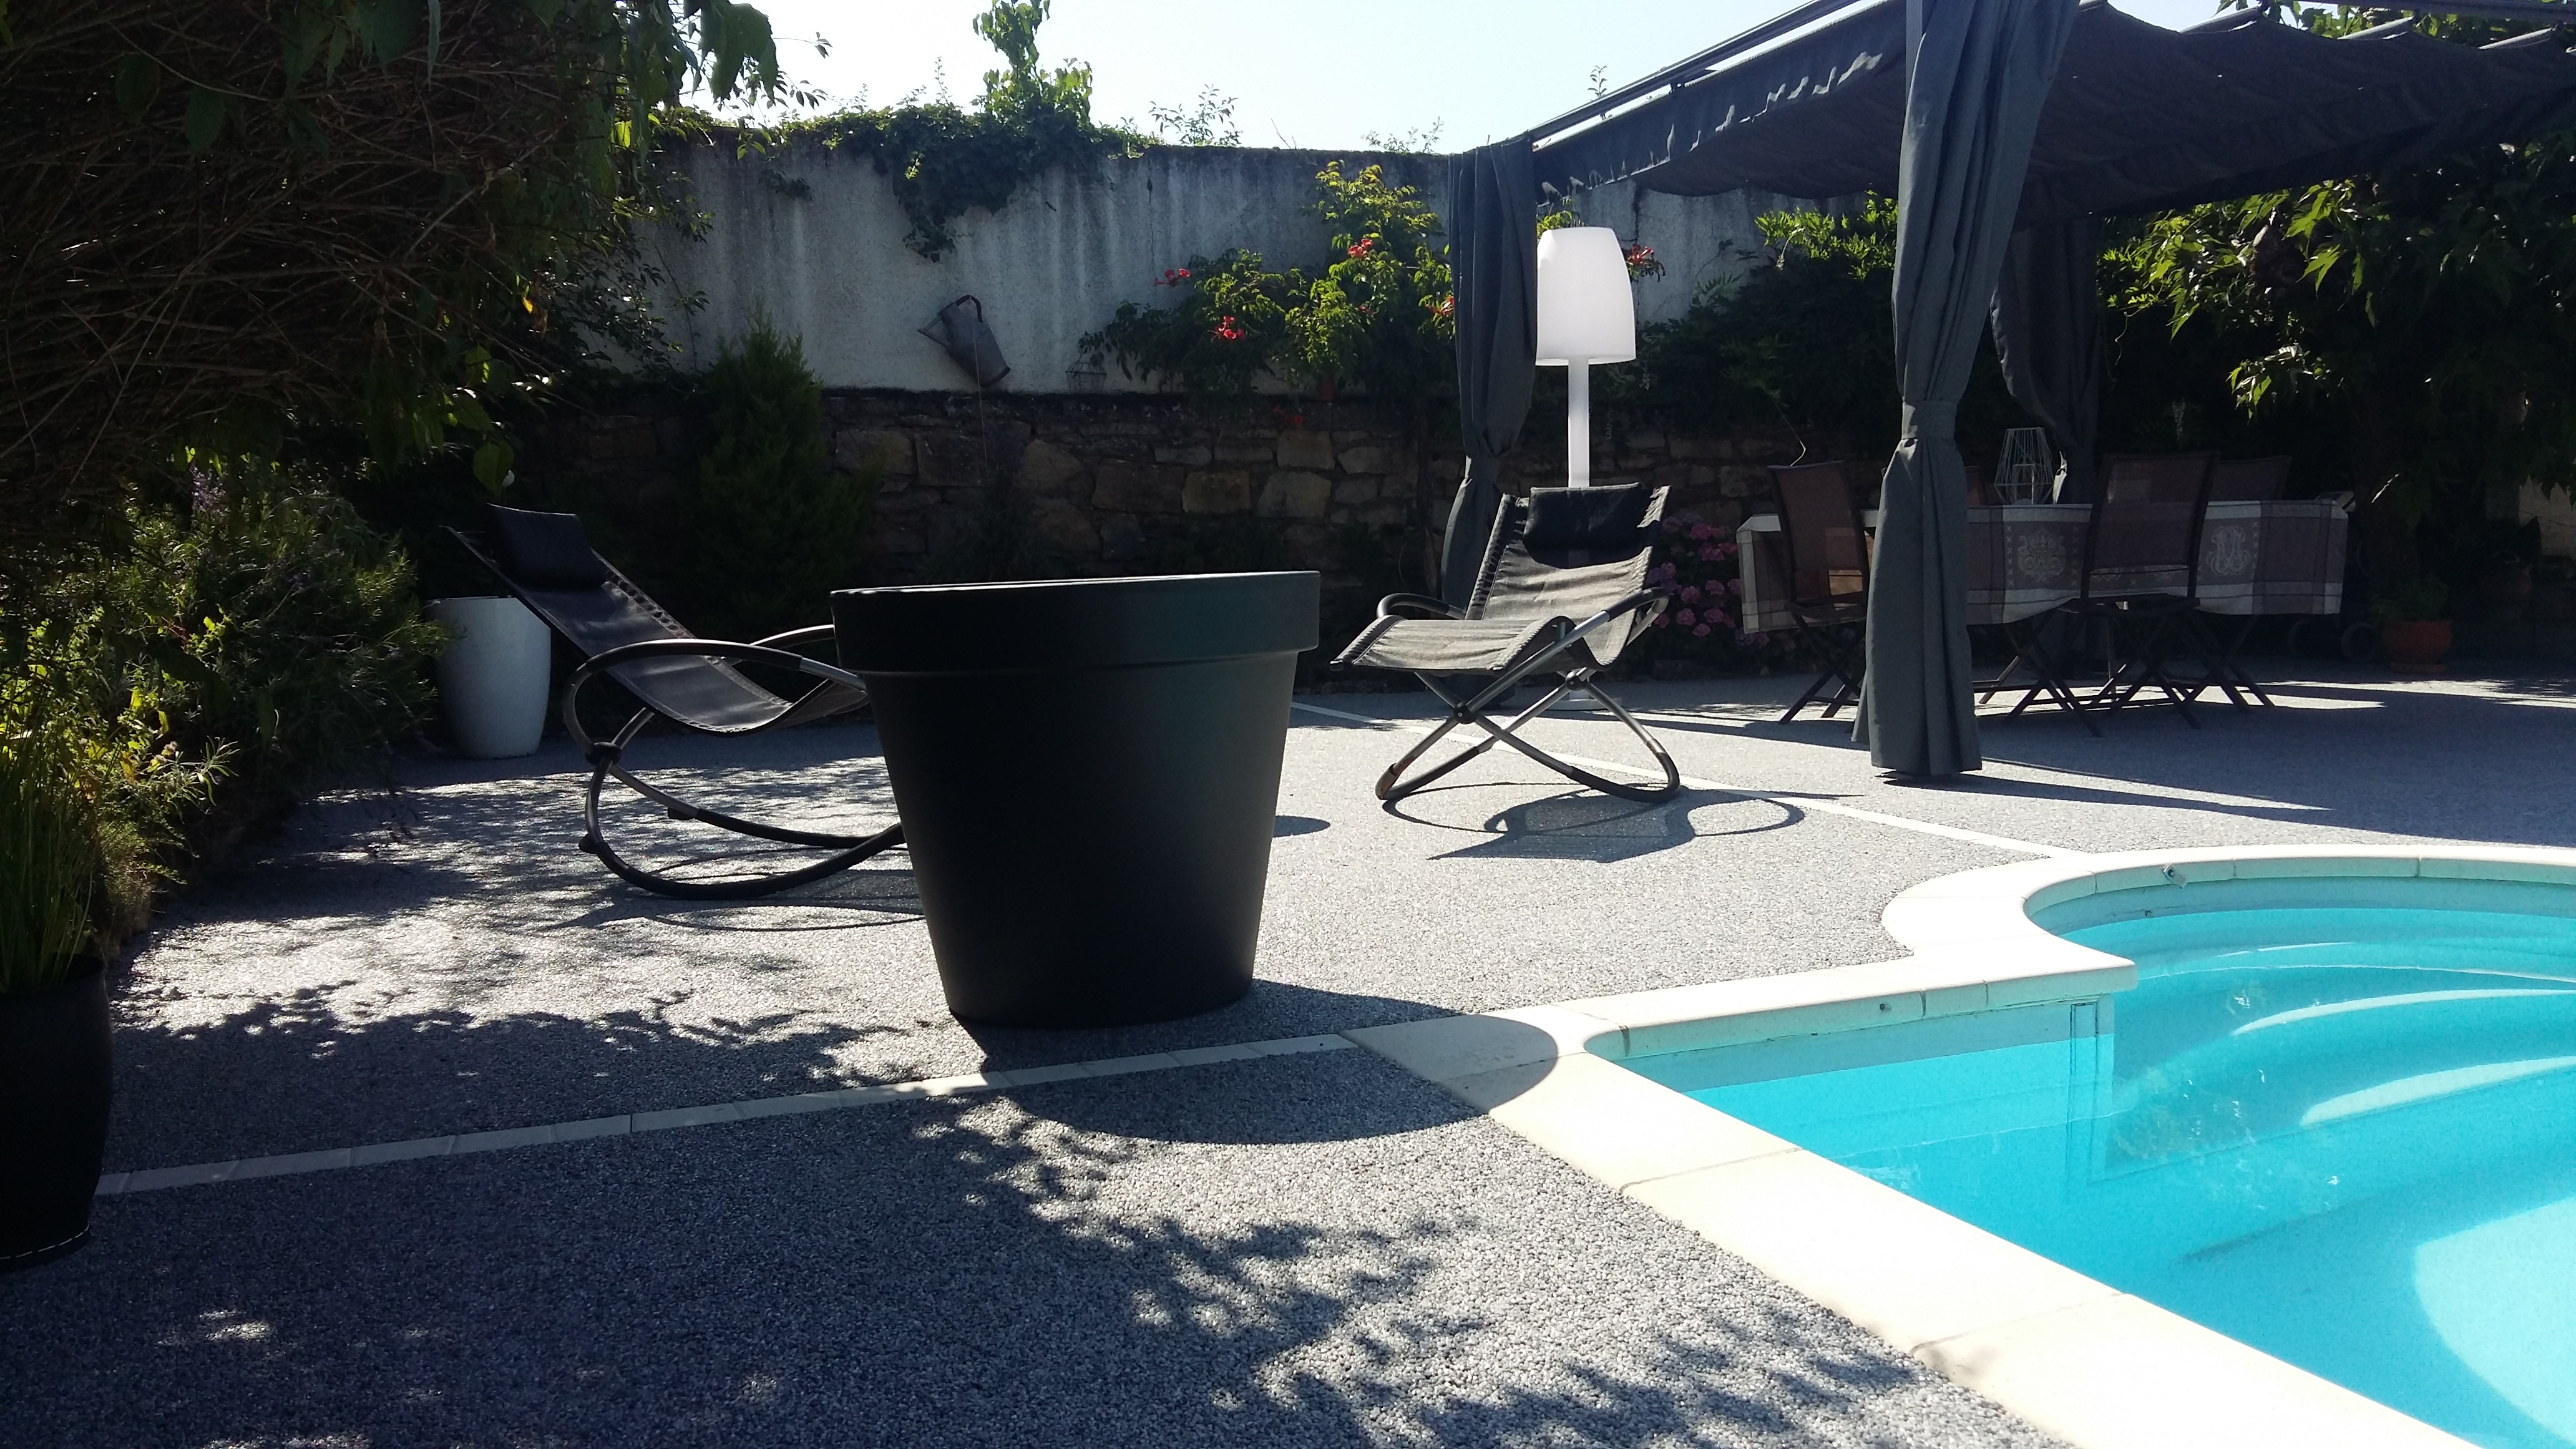 Conception Plage de piscine en Hydrostar - Aveyron ralise le 21/09/2018